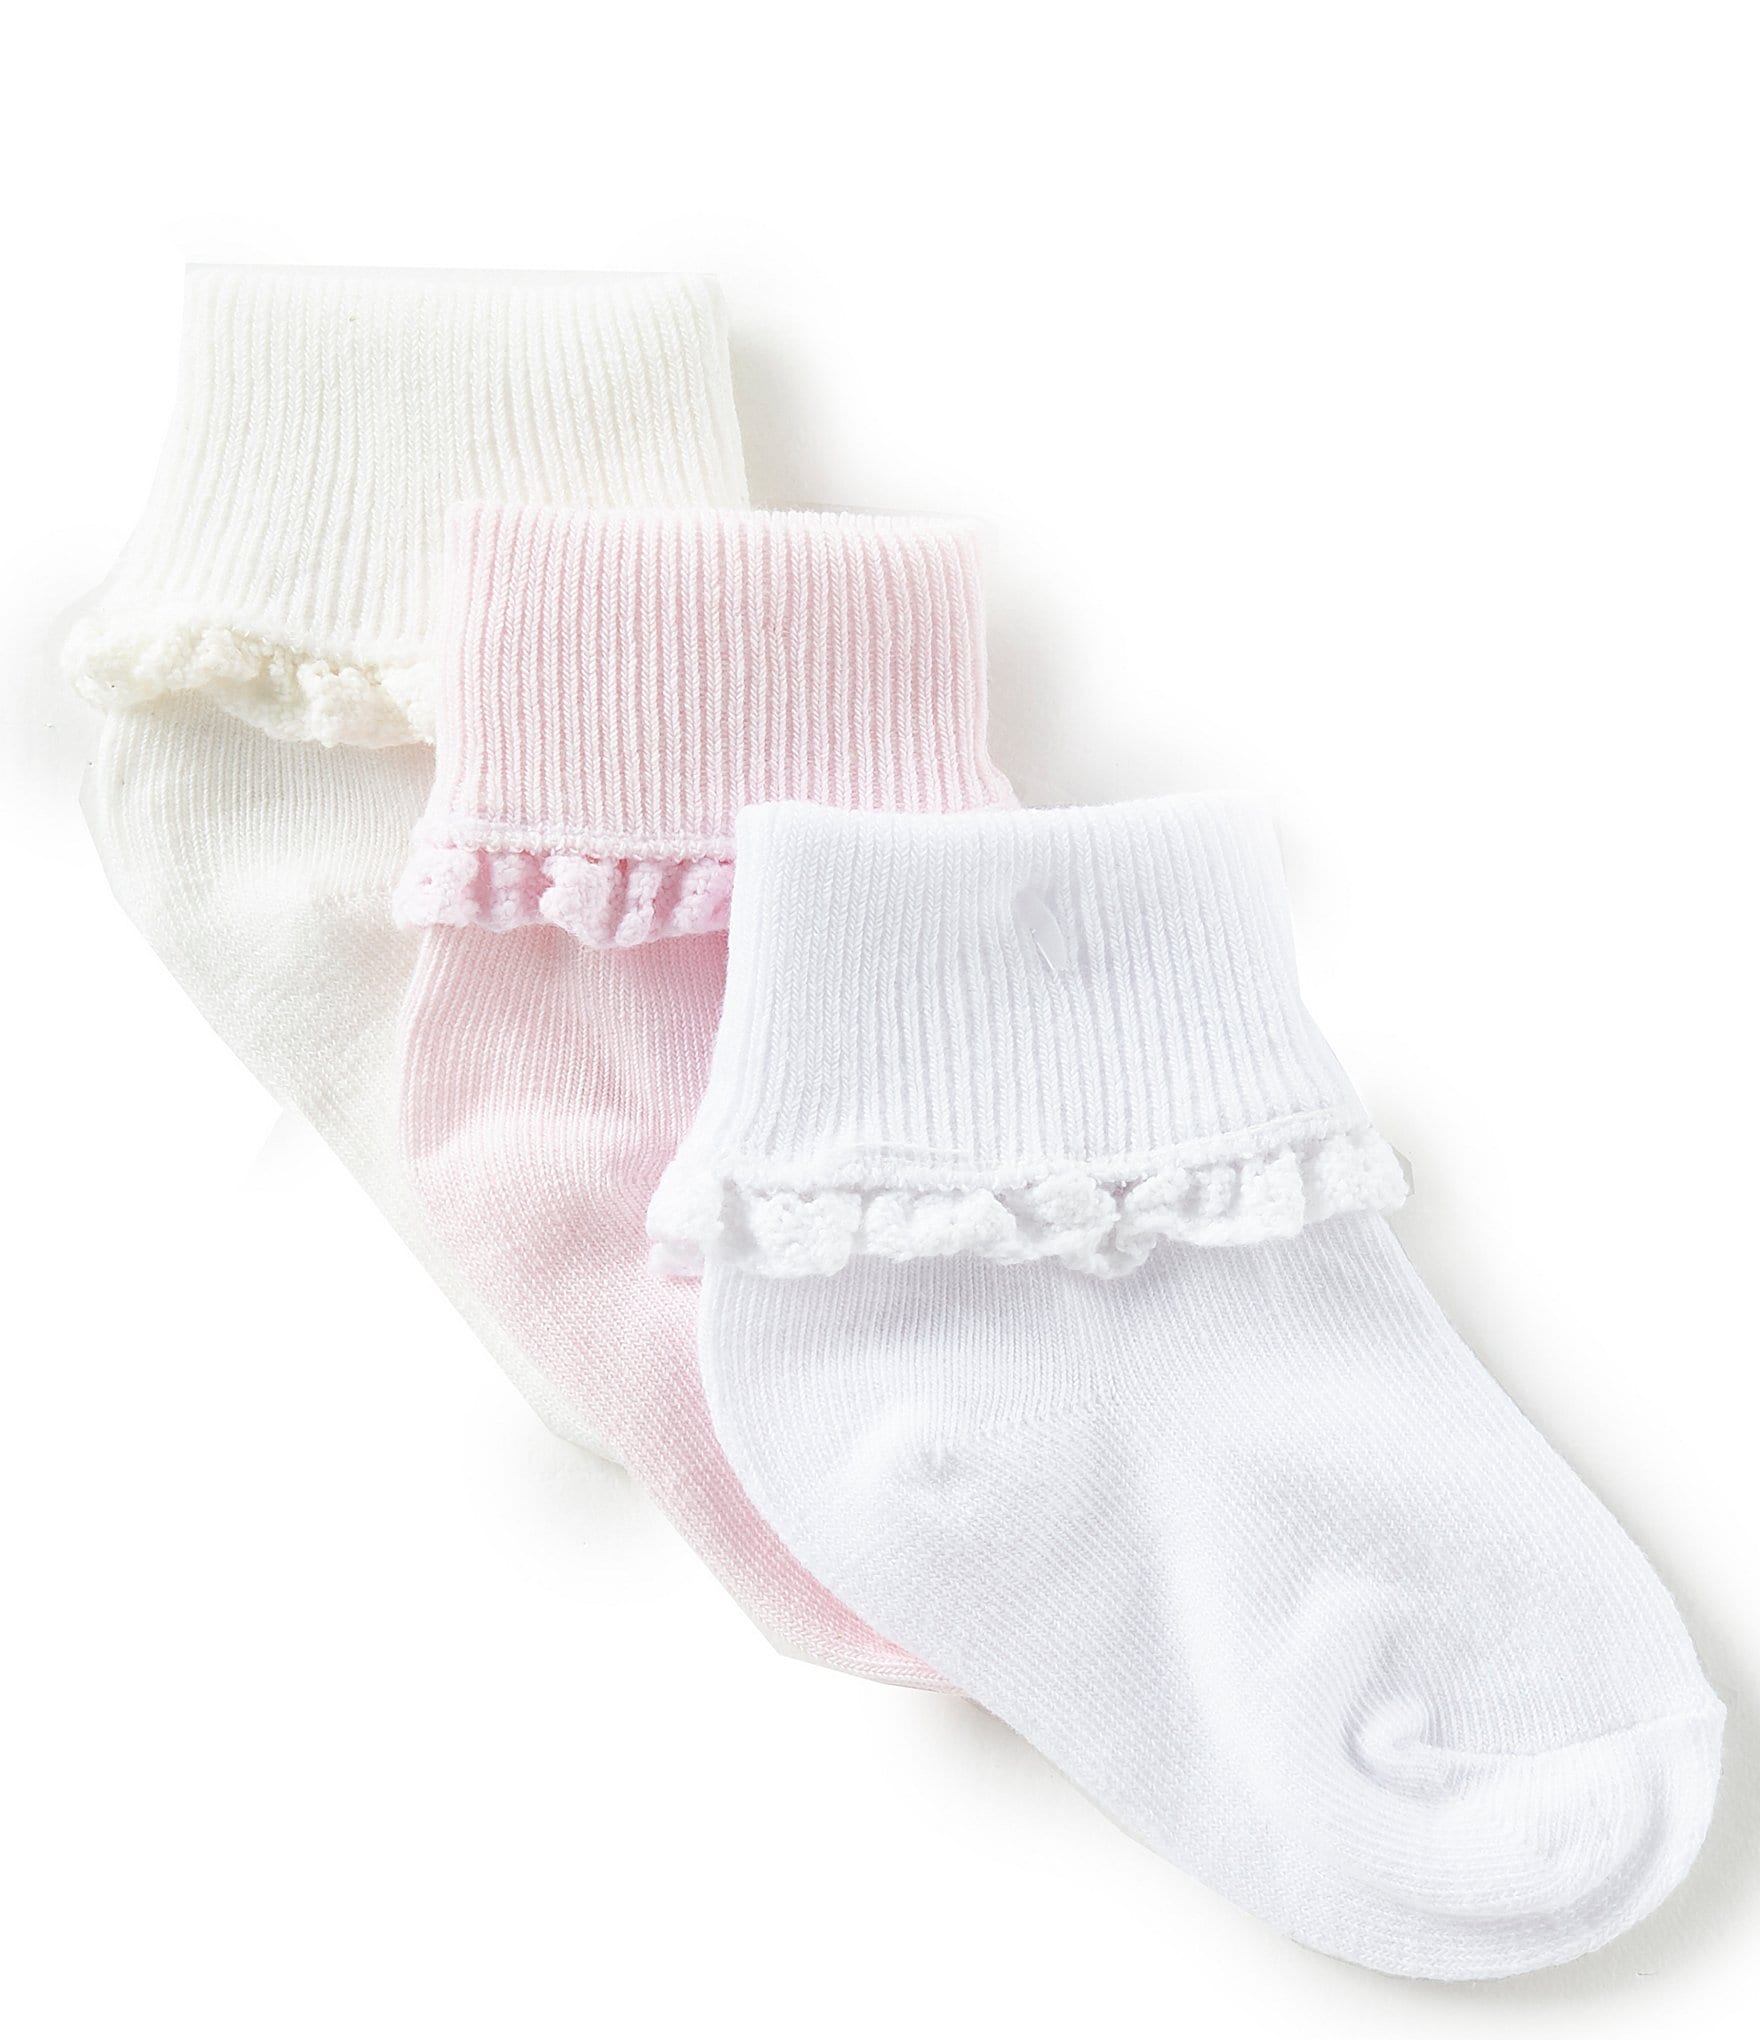 Grips Floor Safety socks Kleding Meisjeskleding Babykleding voor meisjes Sokken & Beenwarmers Newborn Baby Girl 3 PAIRS*Toddler socks & Infant Socks baby socks 